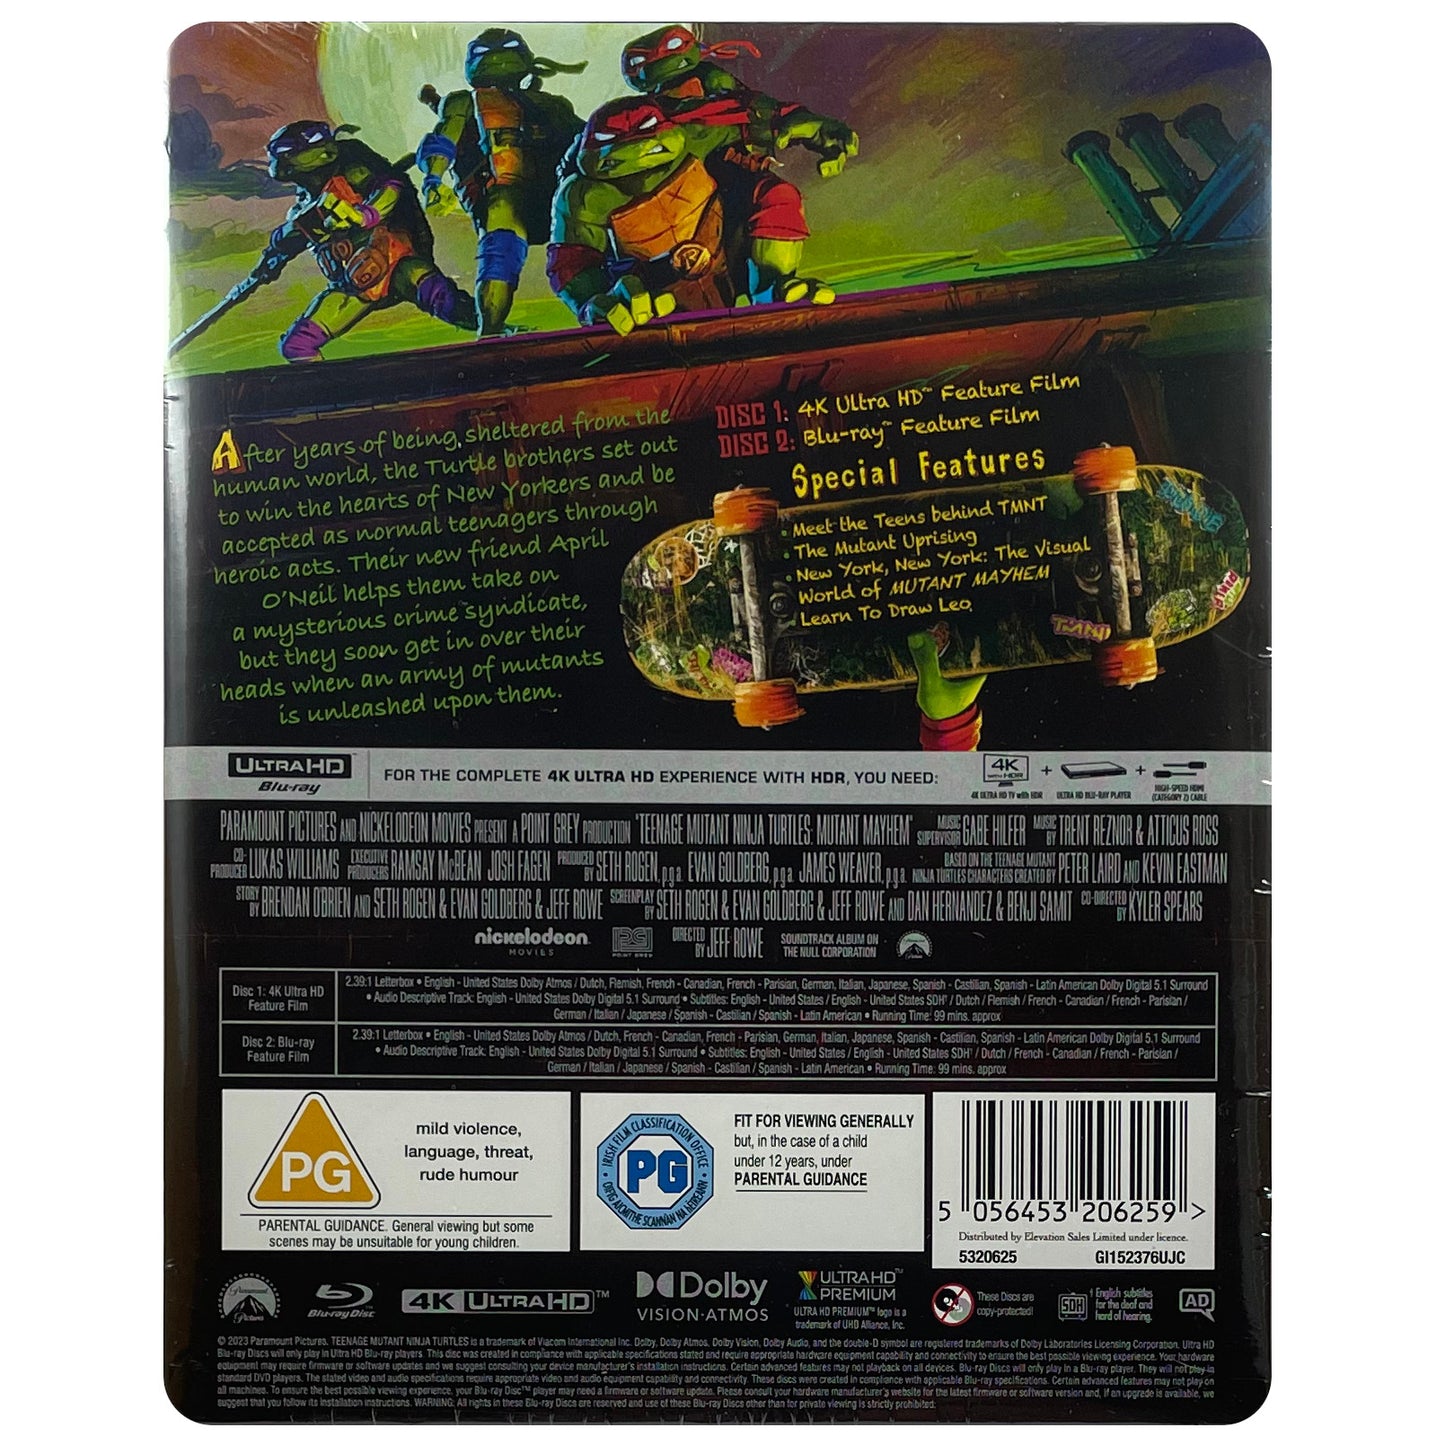 Teenage Mutant Ninja Turtles: Mutant Mayhem (Steelbook) (4K/UHD)